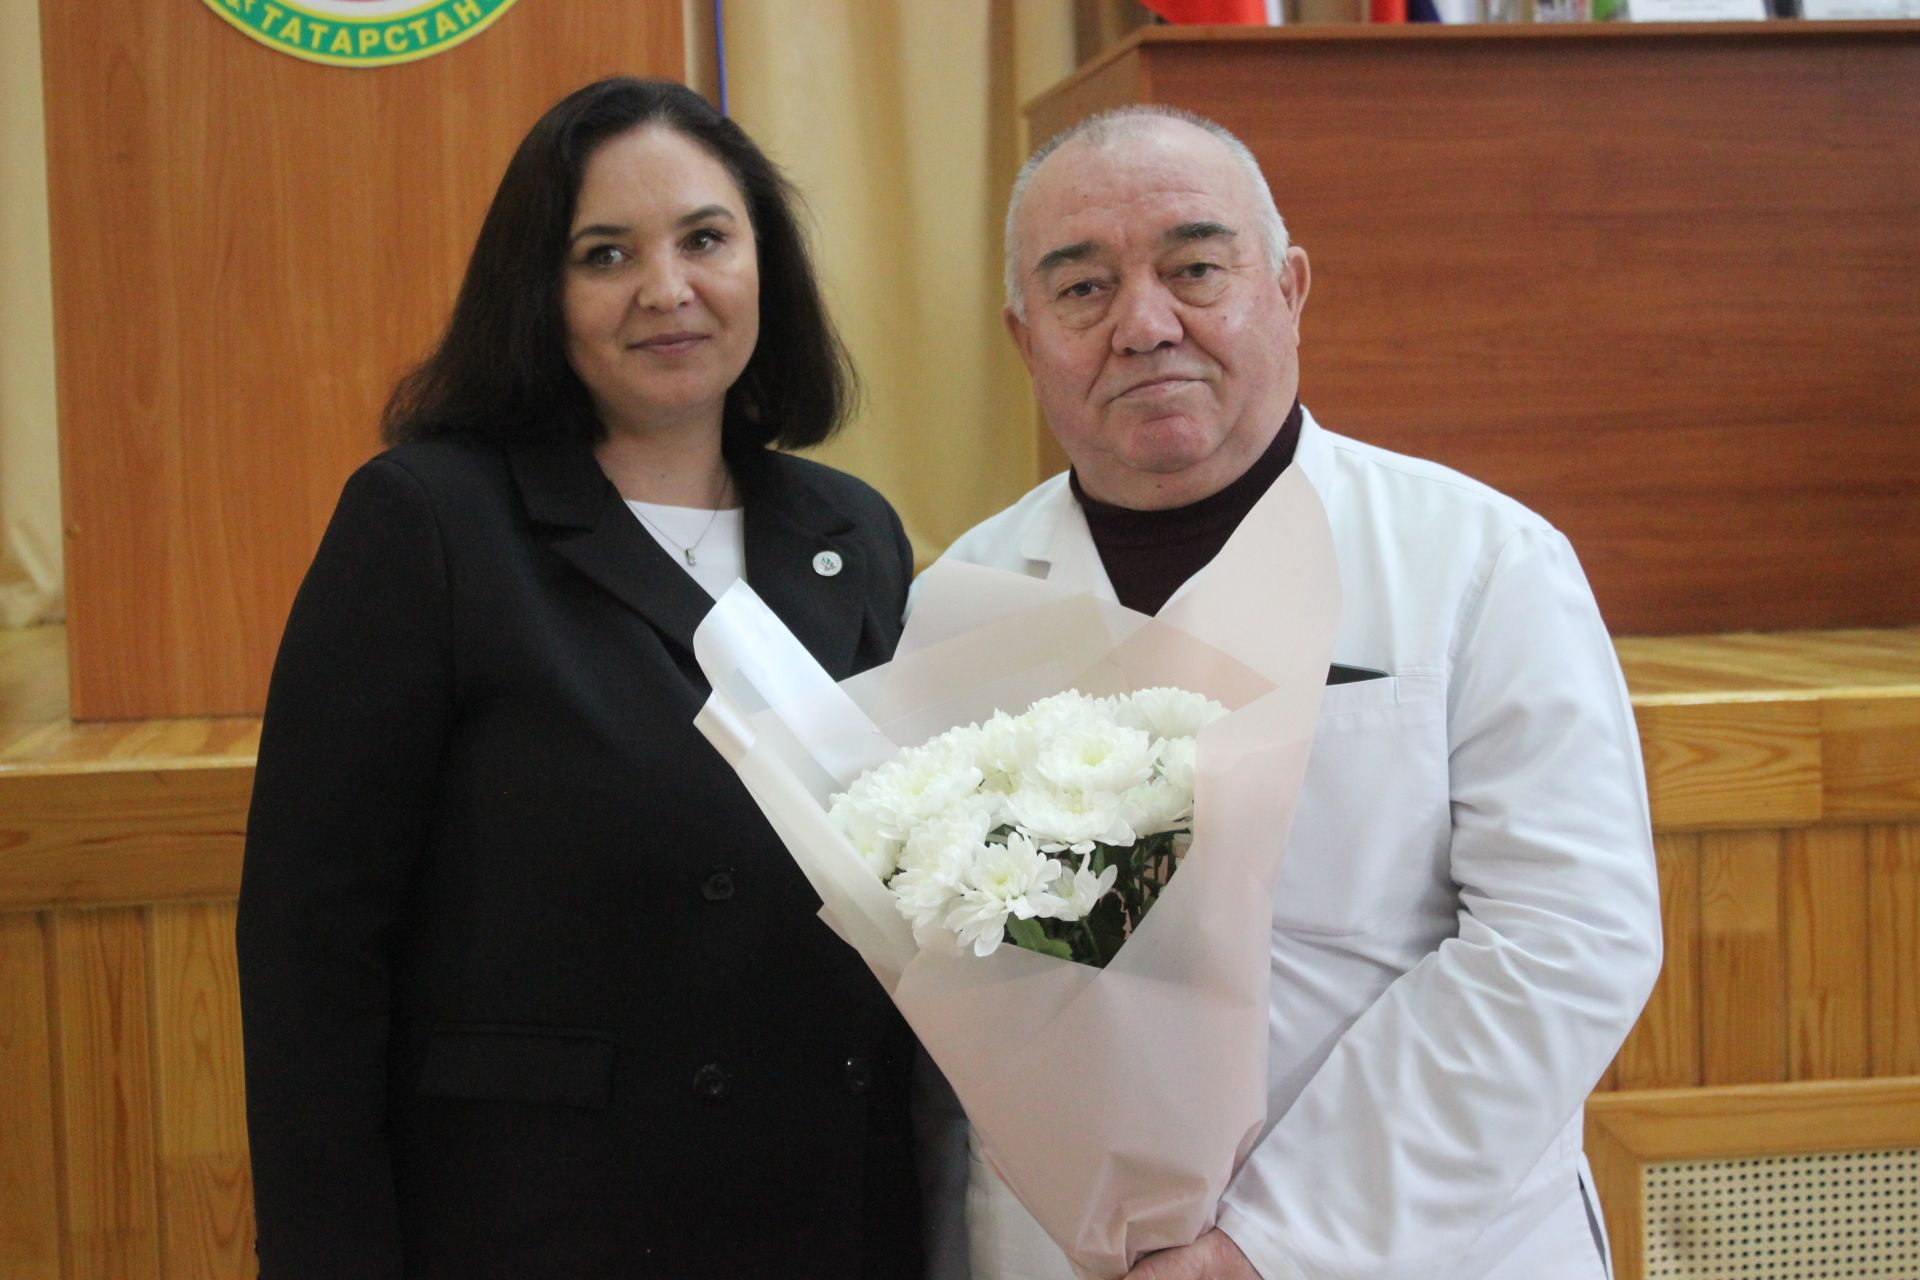 В Кайбицах состоялся медсовет учреждений здравоохранения района